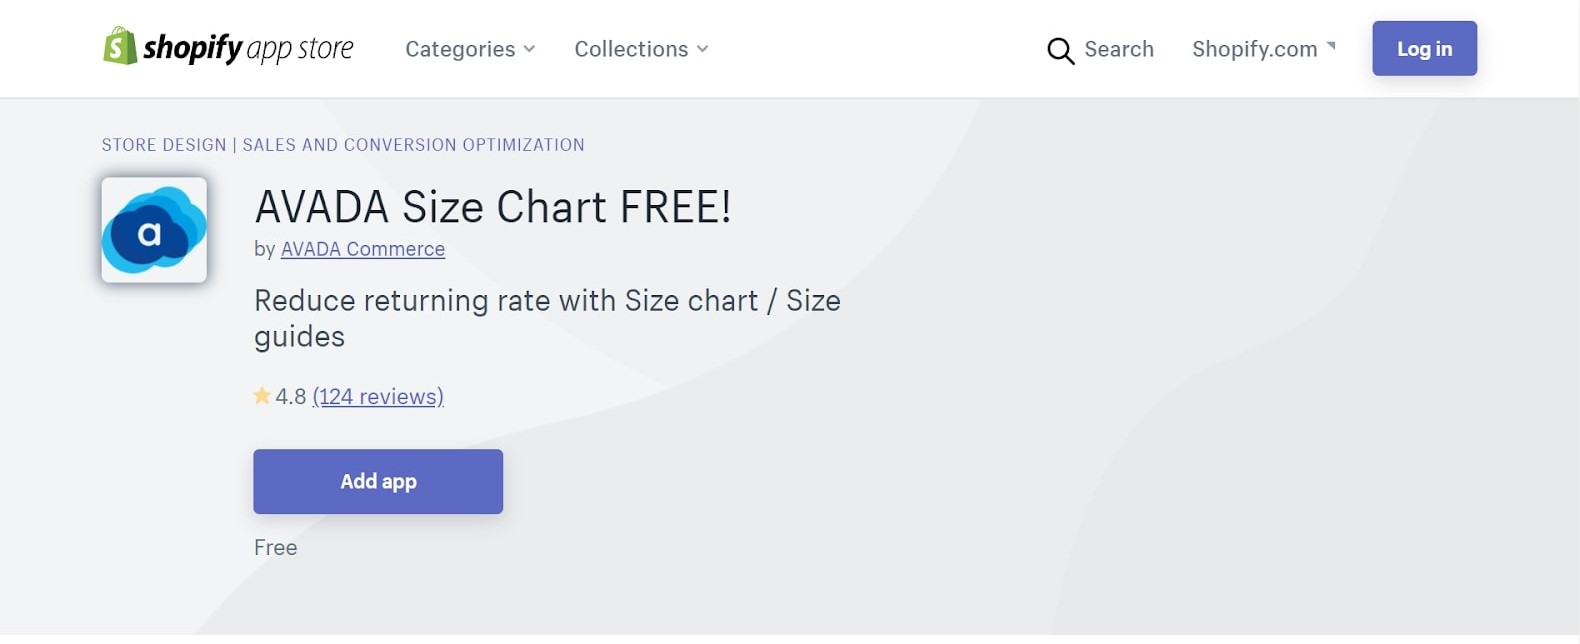 AVADA Size Chart FREE